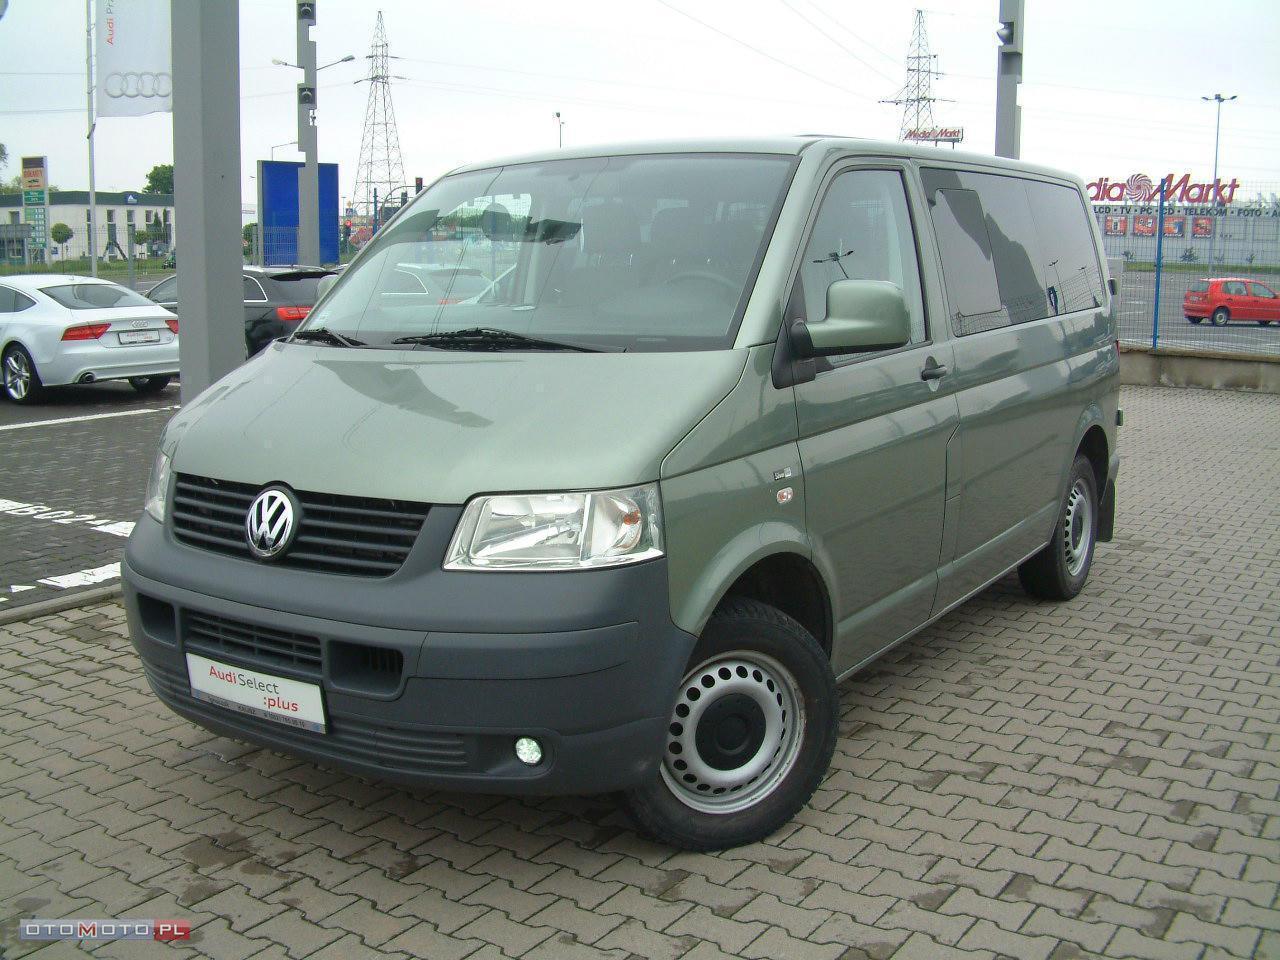 Volkswagen Transporter SALON POLSKA, 6 OSÓB